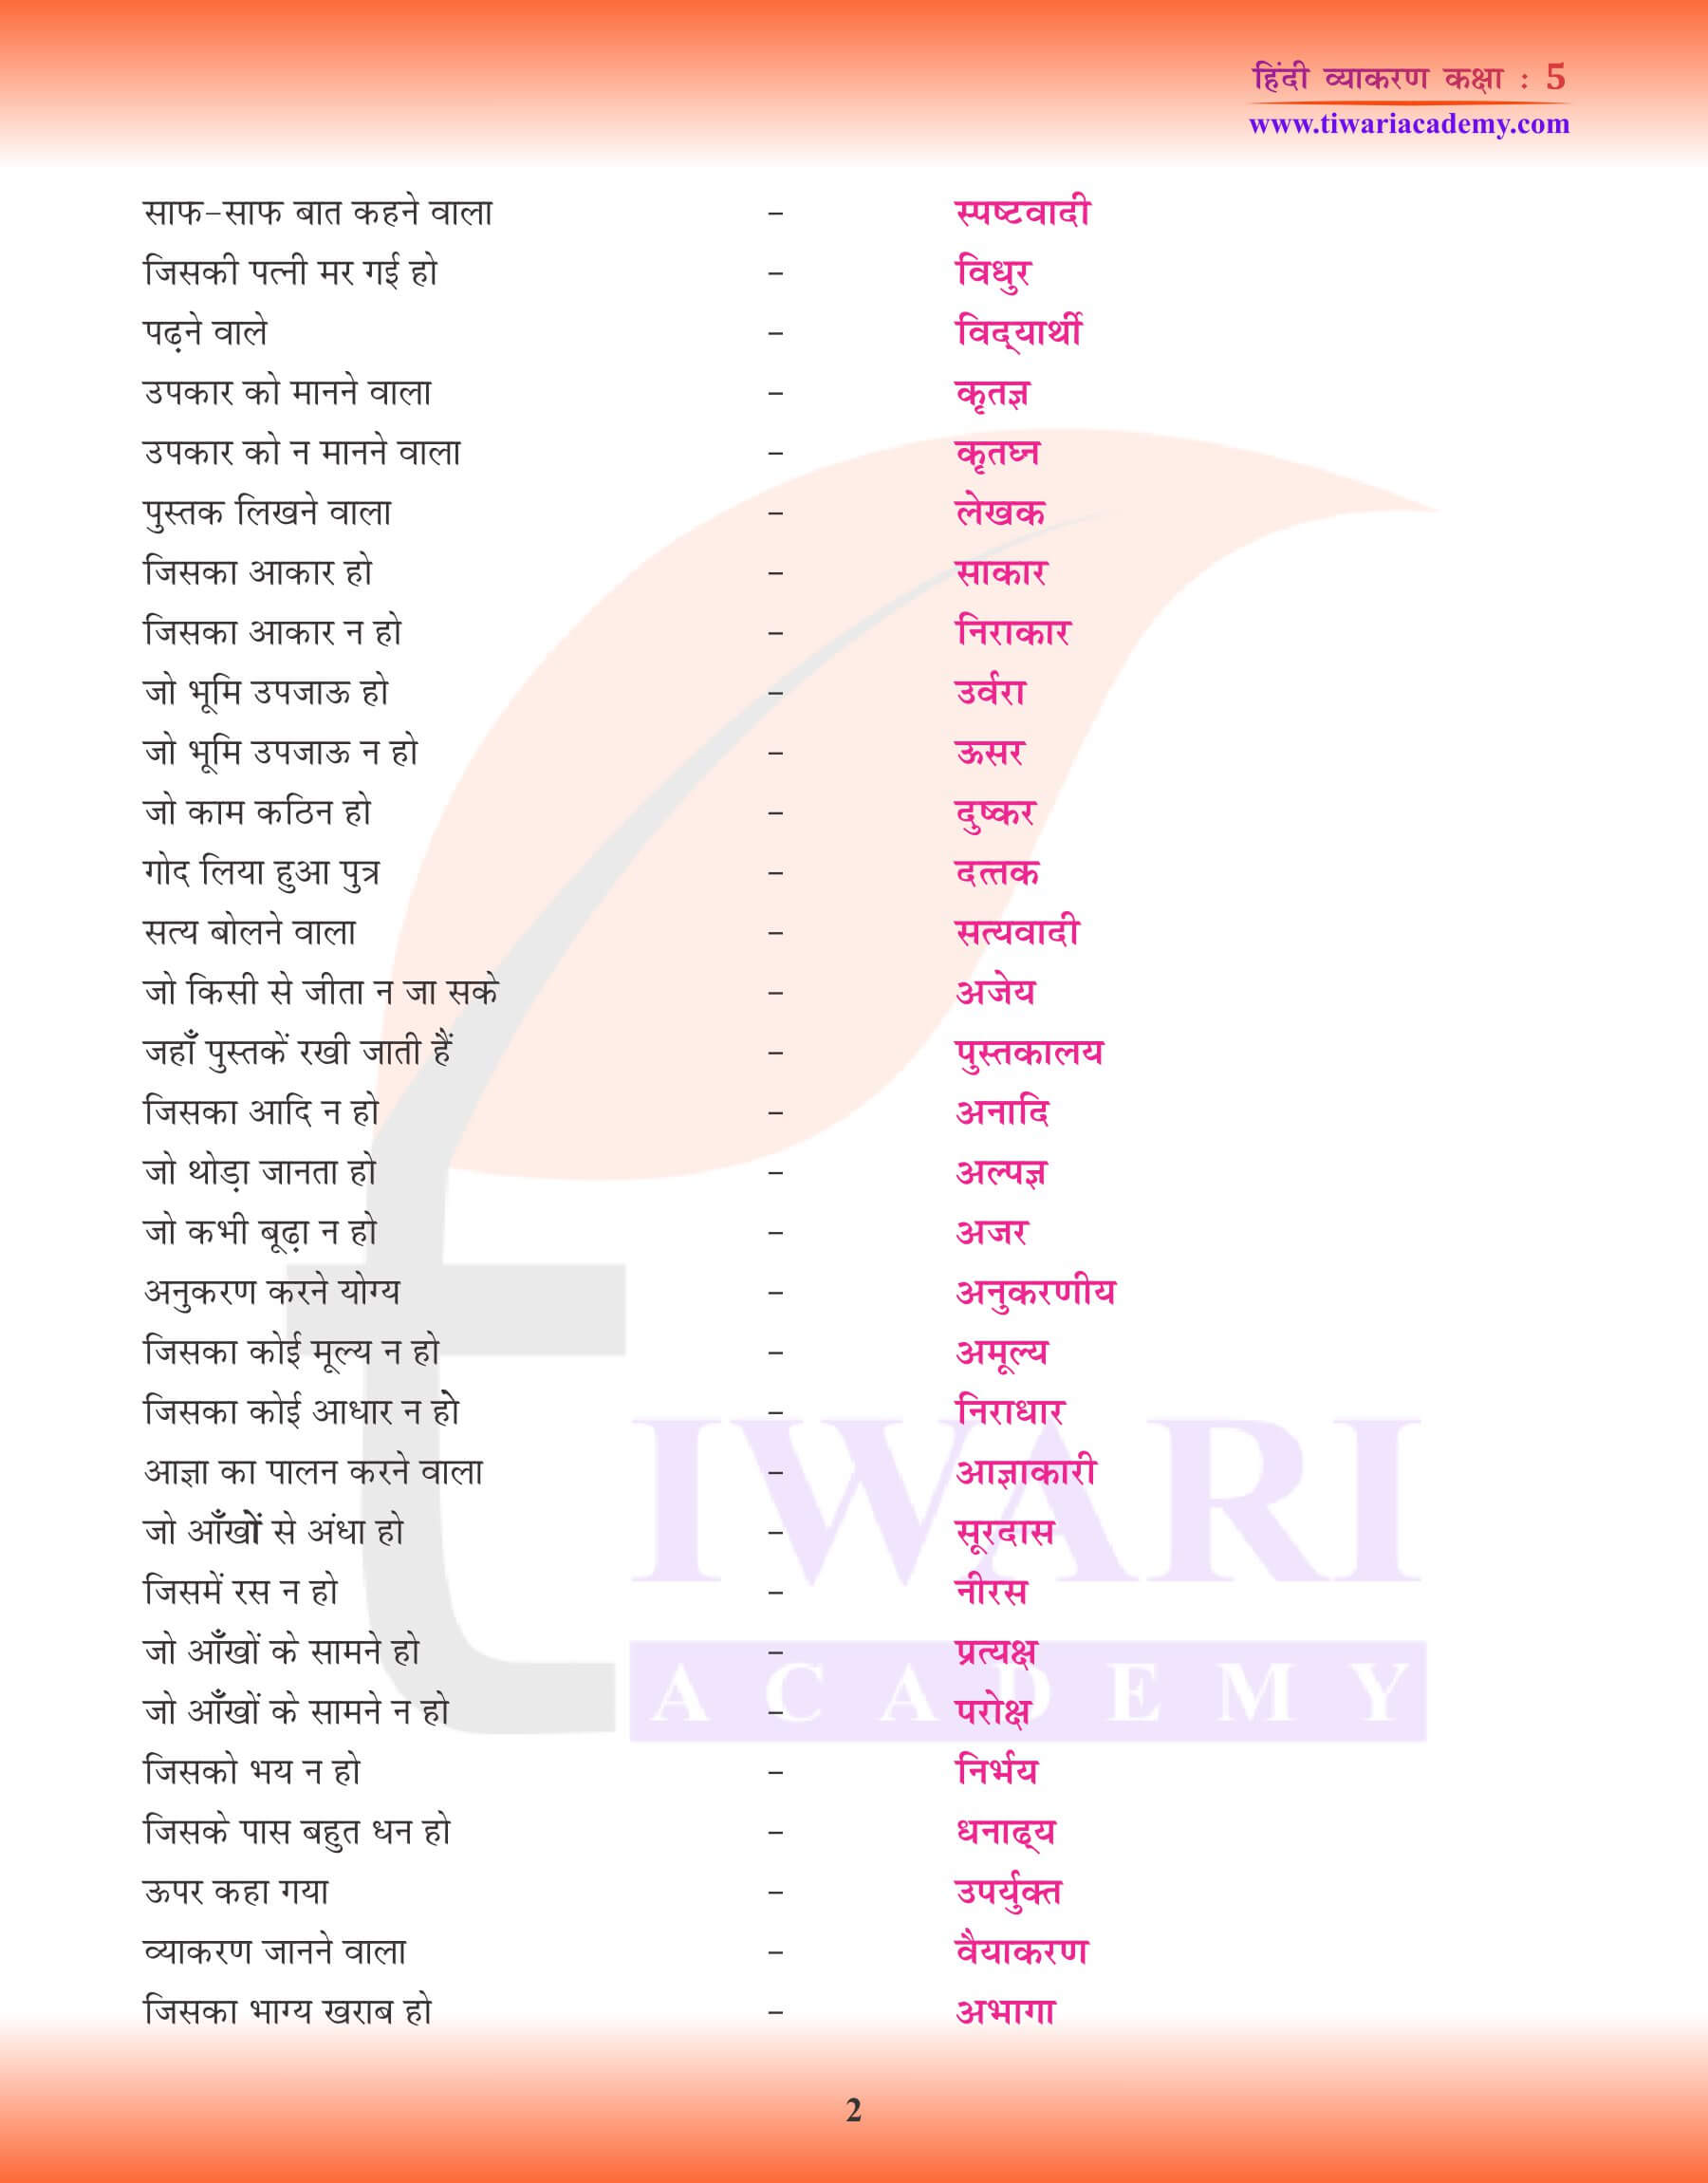 हिंदी व्याकरण में अनेक शब्दों के लिए एक शब्द के उदाहरण